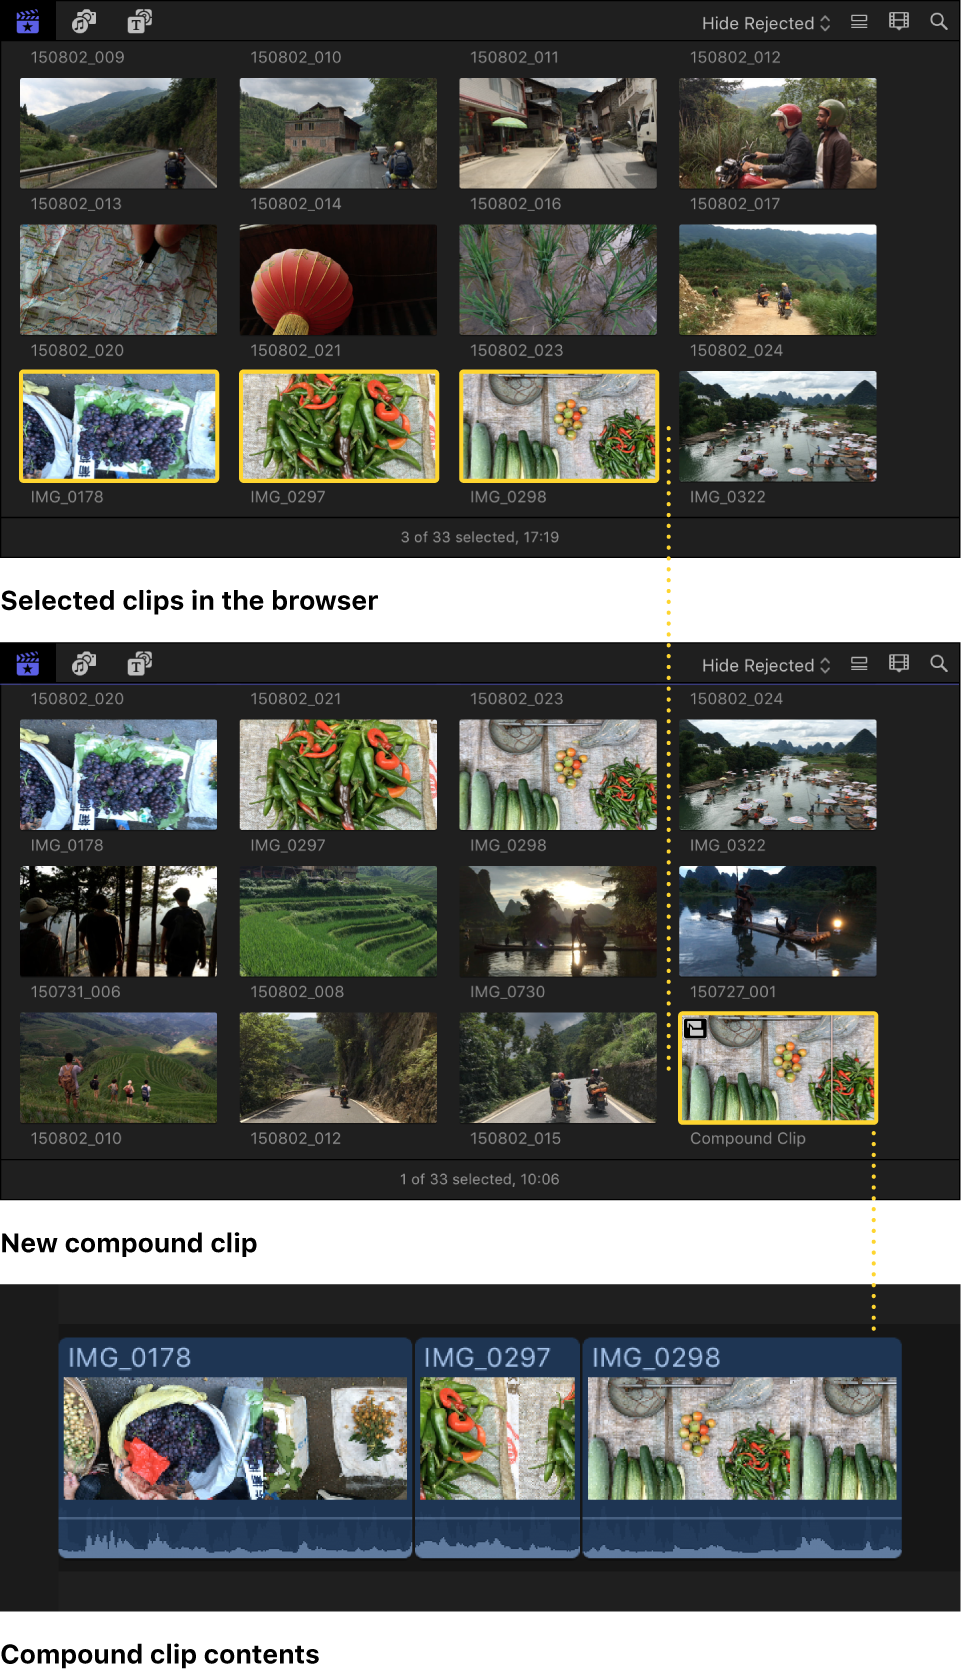 Un clip compuesto creado a partir de clips seleccionados en el explorador